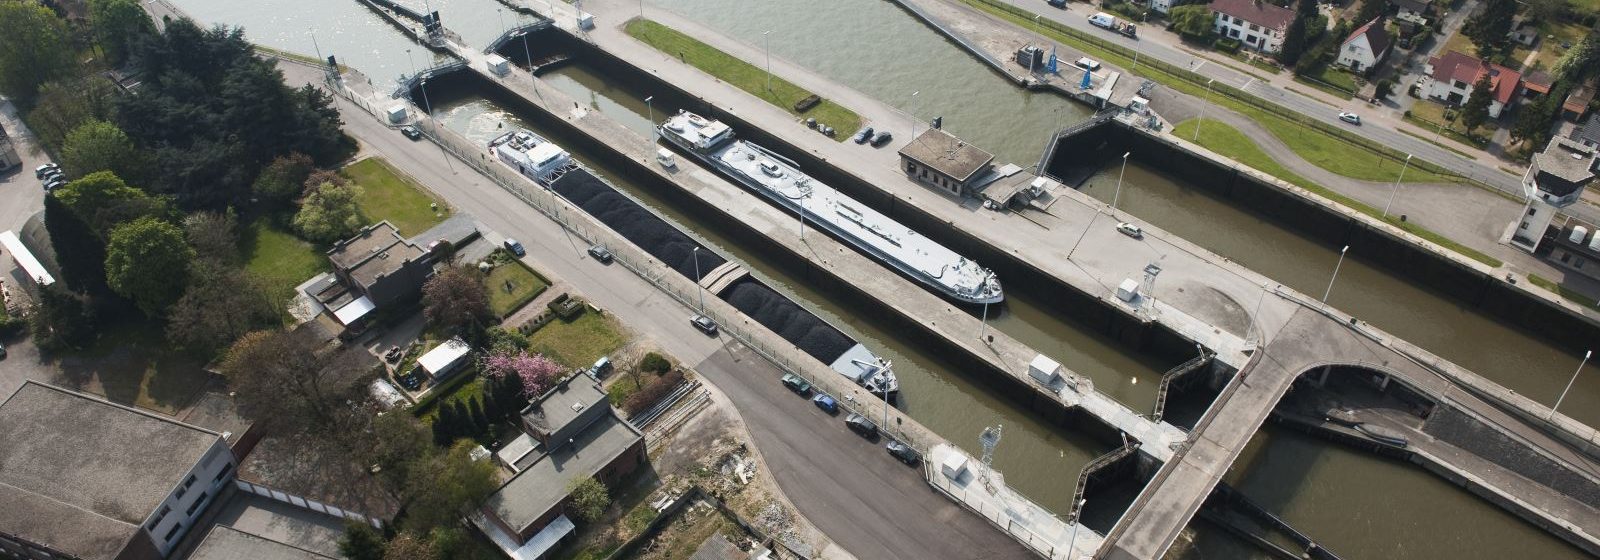 Albertkanaal – brug sluis Wijnegem.